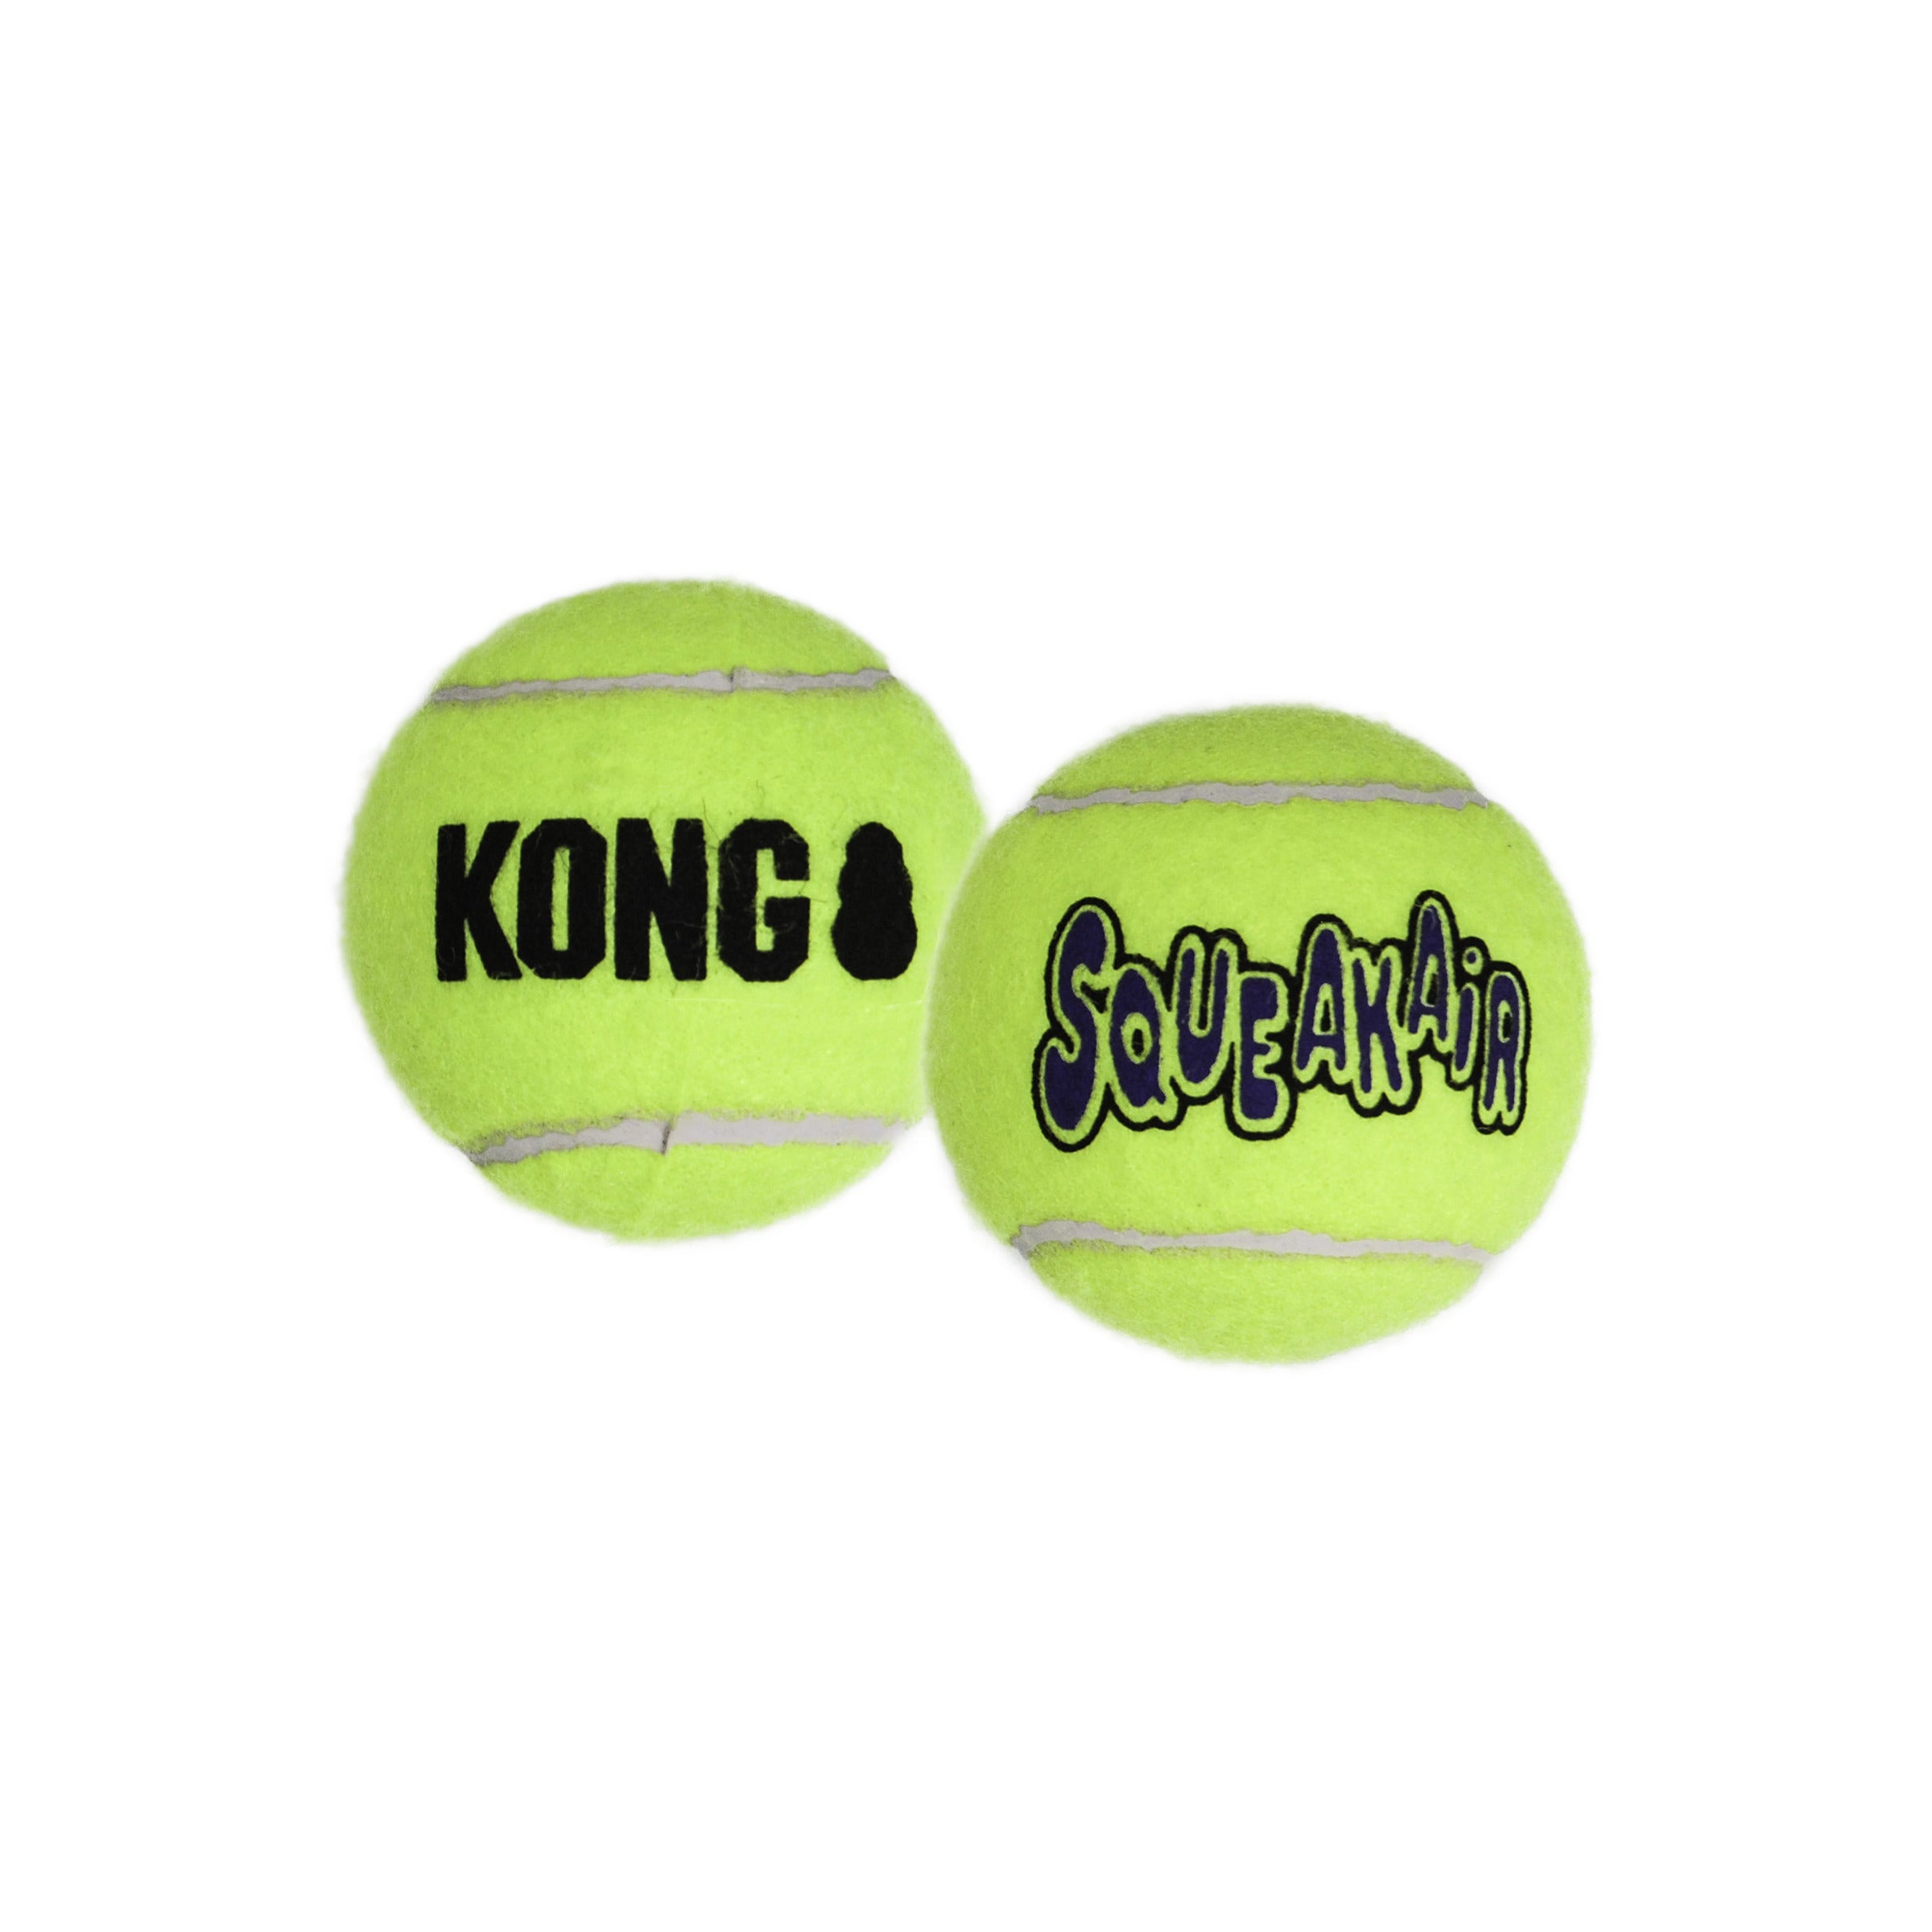 Squeak Air Balls de Kong - Pelota de Tenis con Sonido